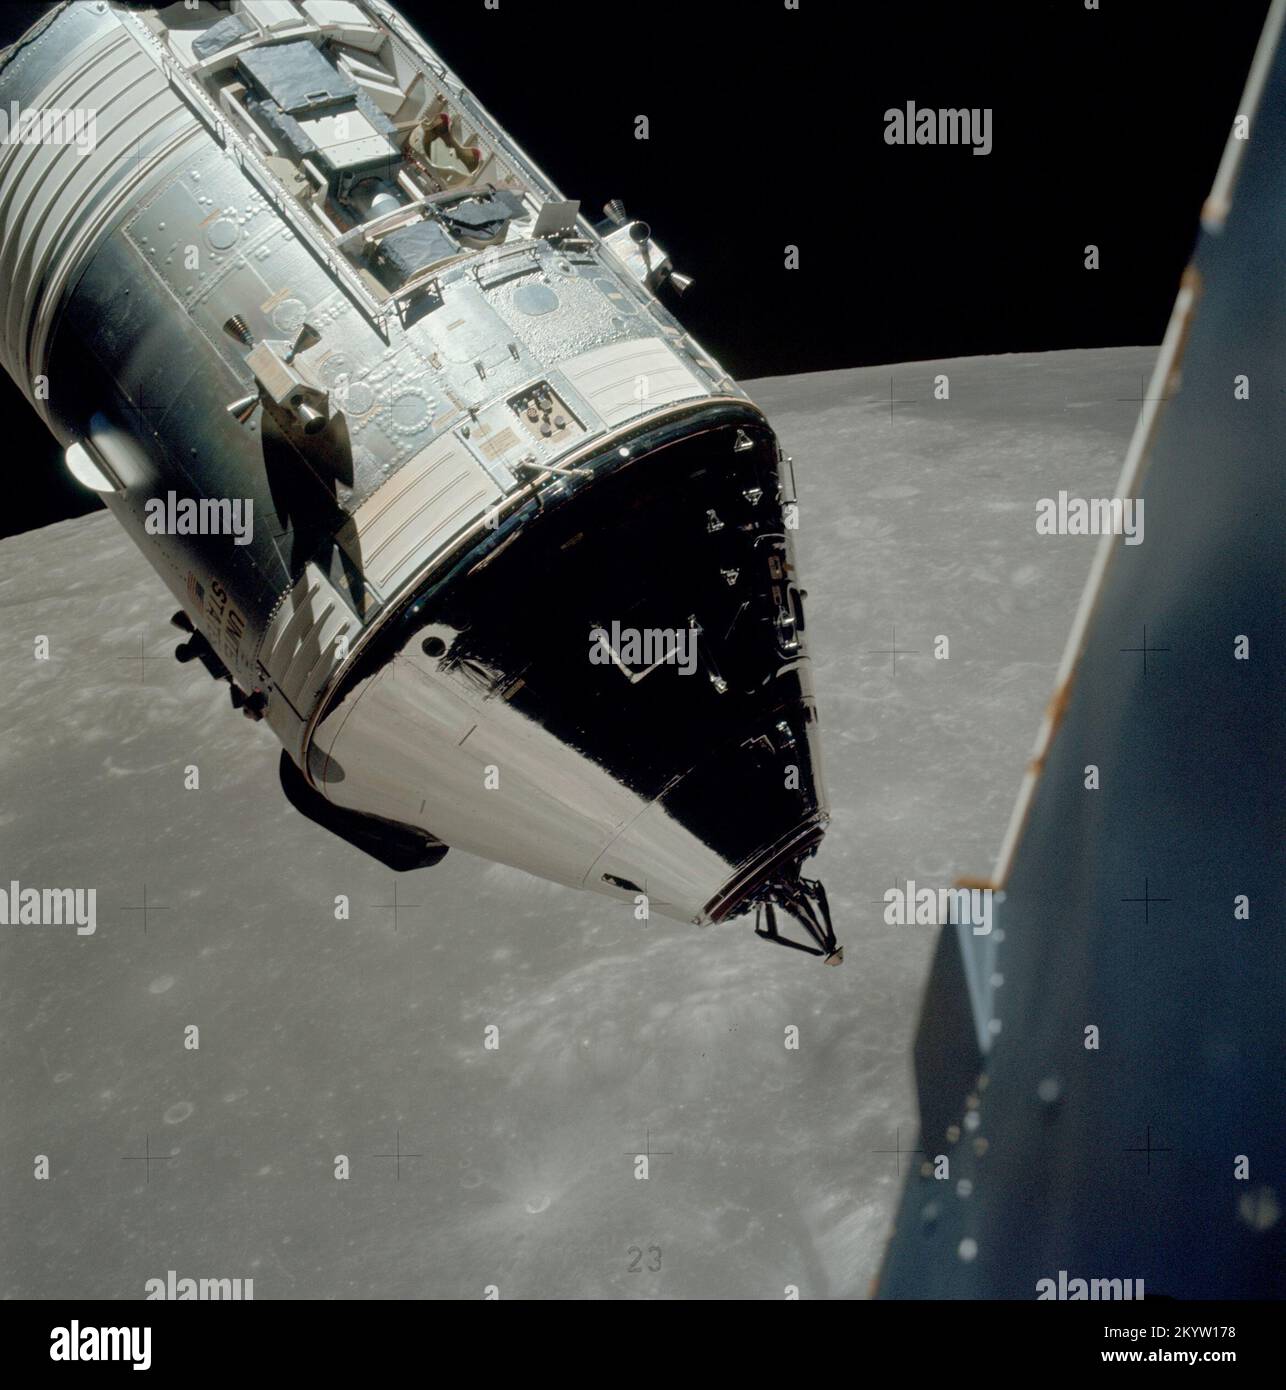 Moduli di comando/servizio Apollo 17 fotografati dal modulo lunare in orbita una vista eccellente dei moduli di comando e servizio (CSM) Apollo 17 fotografati dal modulo lunare (LM) 'Challenger' durante manovre di appuntamento e di attracco in orbita lunare. Il palcoscenico di LM, con gli astronauti Eugene A. Cernan e Harrison H. Schmitt a bordo, era appena tornato dal sito di sbarco Taurus-Littrow sulla superficie lunare. L'astronauta Ronald E. Evans rimase con il CSM in orbita lunare. Prendere nota dell'alloggiamento del modulo per strumenti scientifici (SIM) esposto nel settore 1 del modulo di servizio (SM). Dicembre 14, 1972 Foto Stock